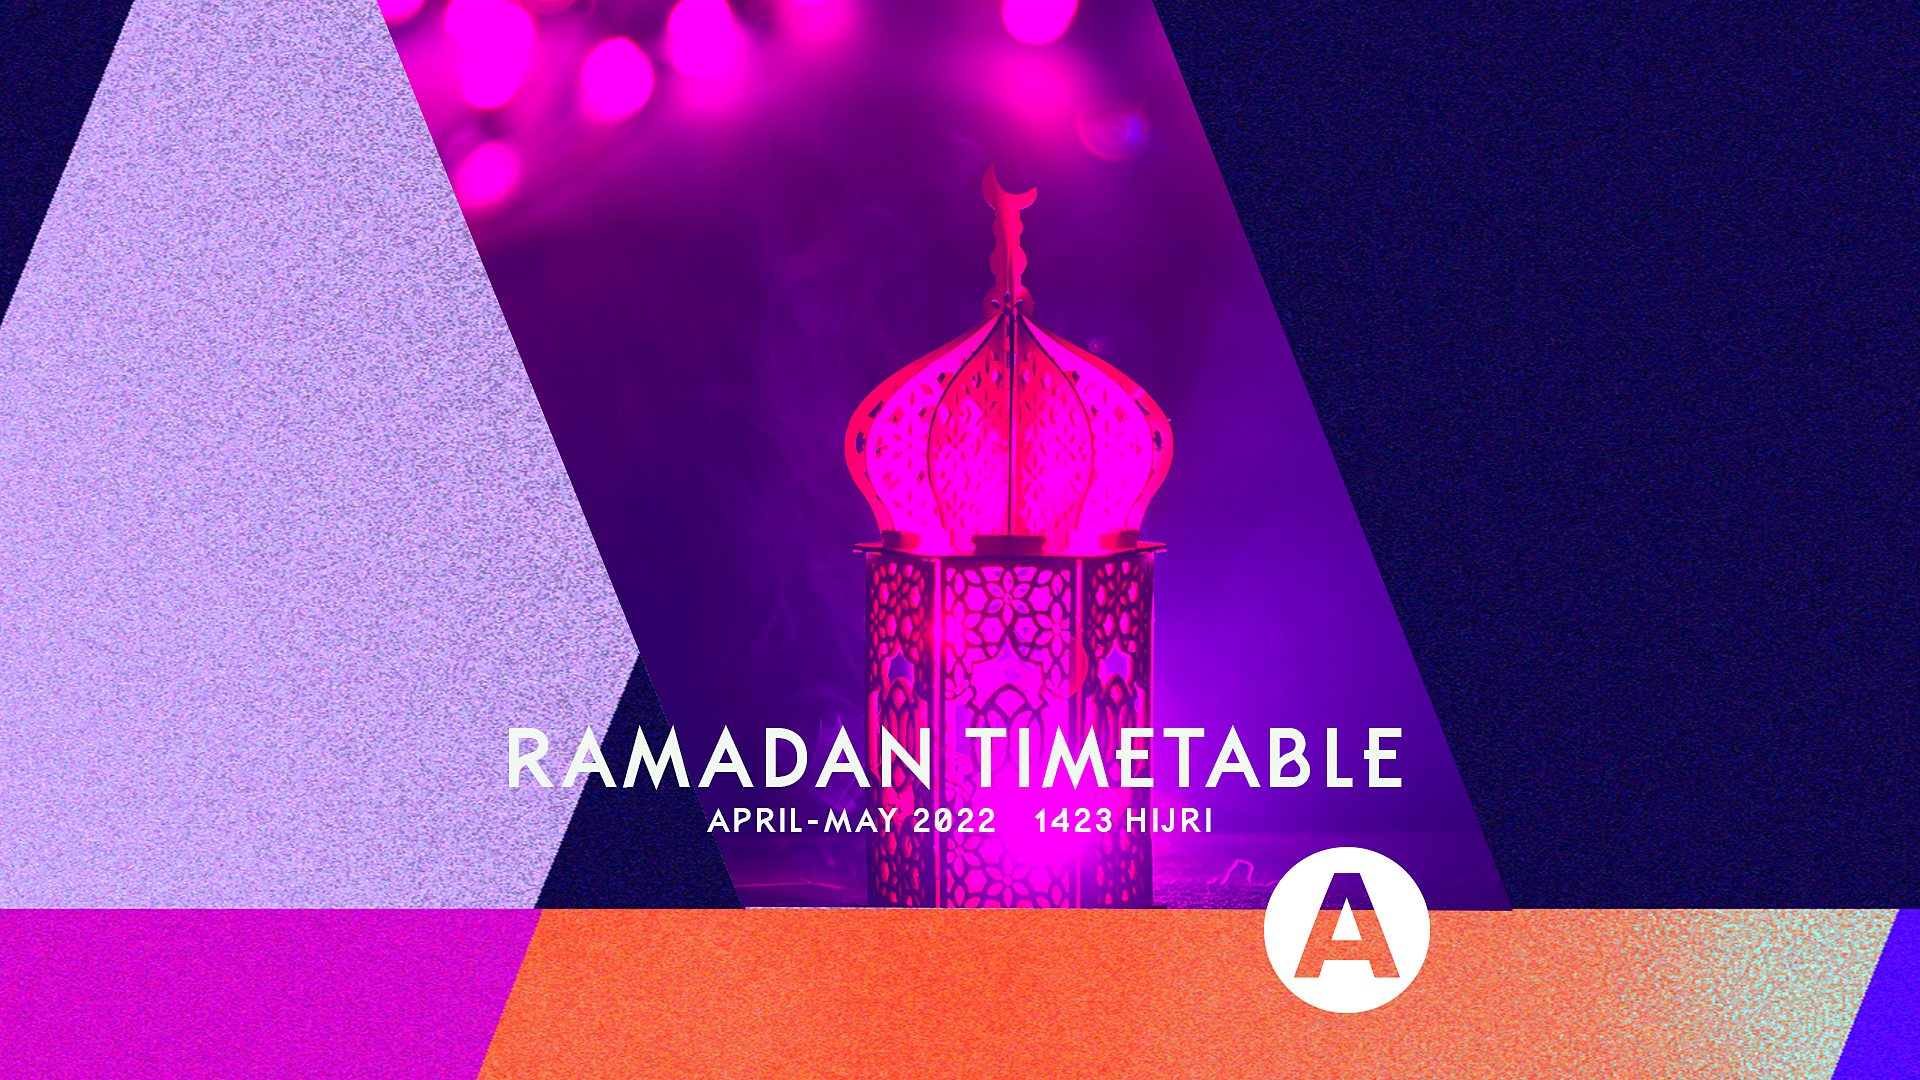 Ramadan 2022 malaysia timetable